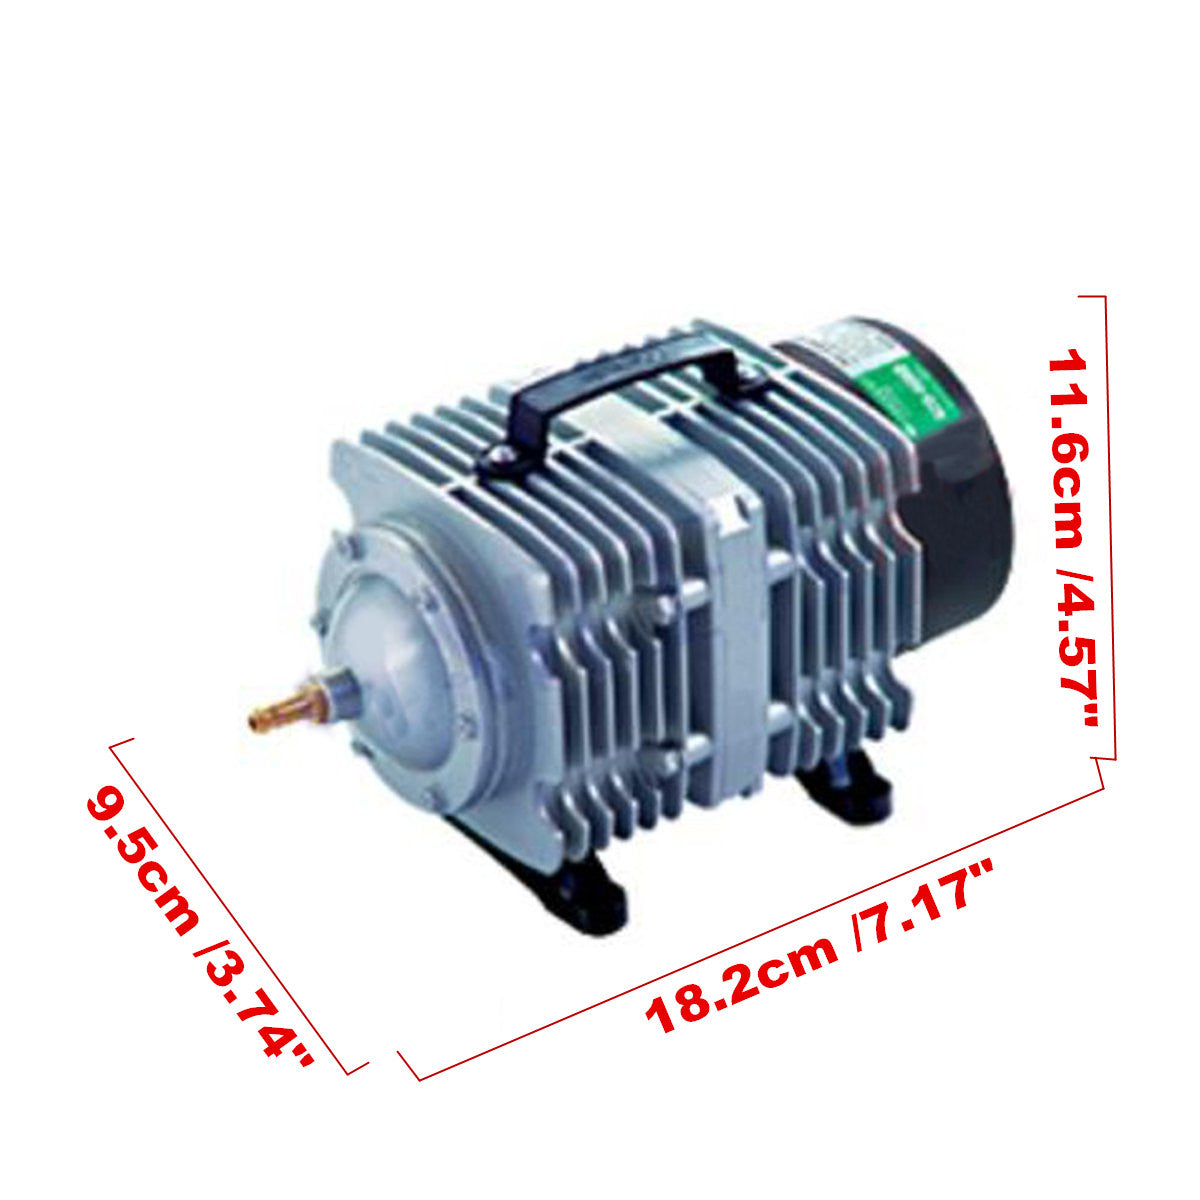 70L/min 35W/45W Electromagnetic Aquarium Air Pump Fish Pond Compressor 220V - Auto GoShop